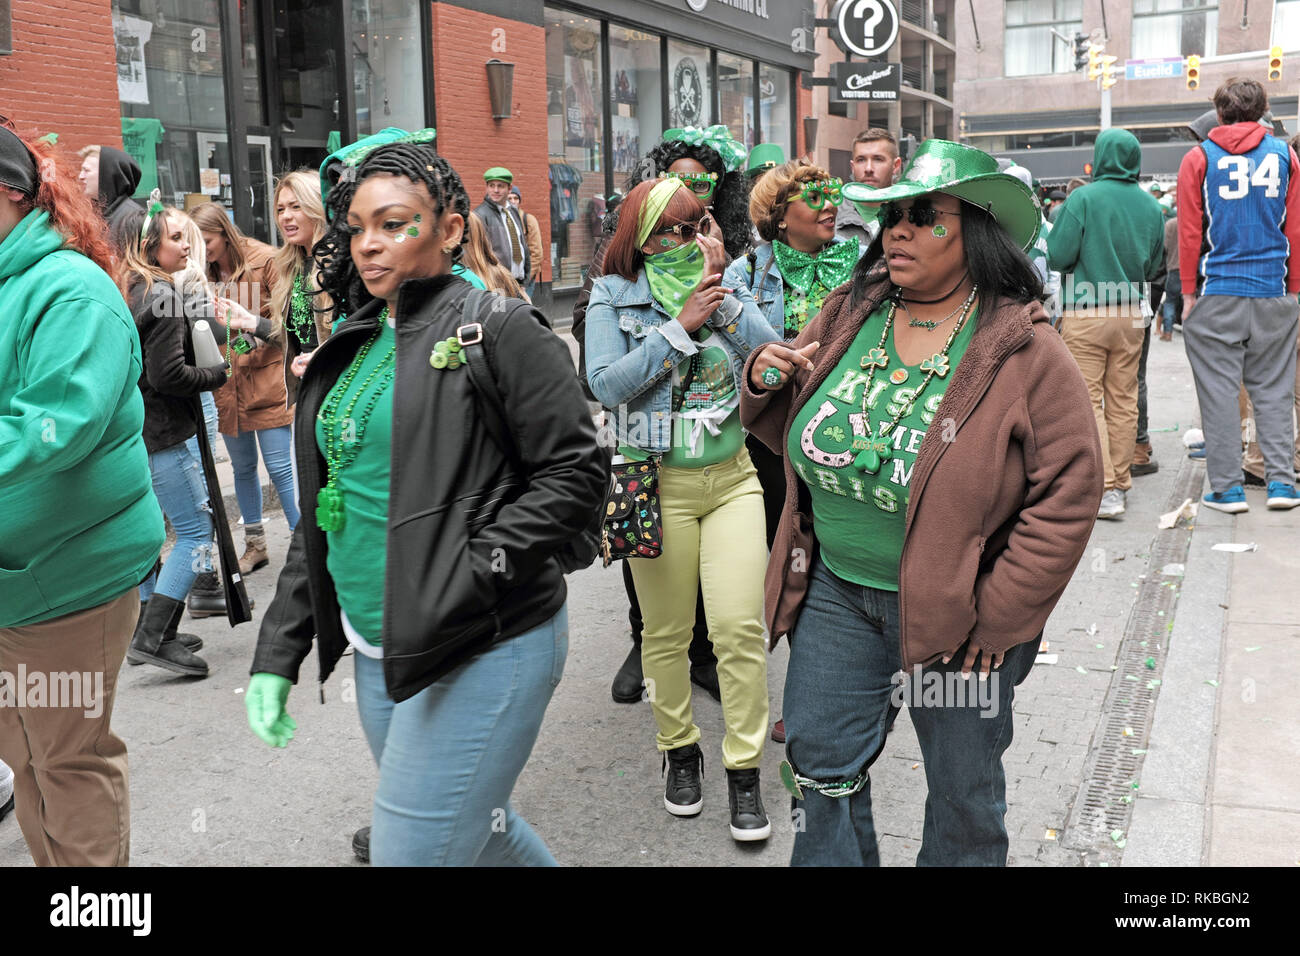 St. Patrick's Day Zelebranten gekleidet in grün machen sich auf den Weg nach East 4th Street in Cleveland, Ohio, USA. Während des Tages - lange Feier. Stockfoto